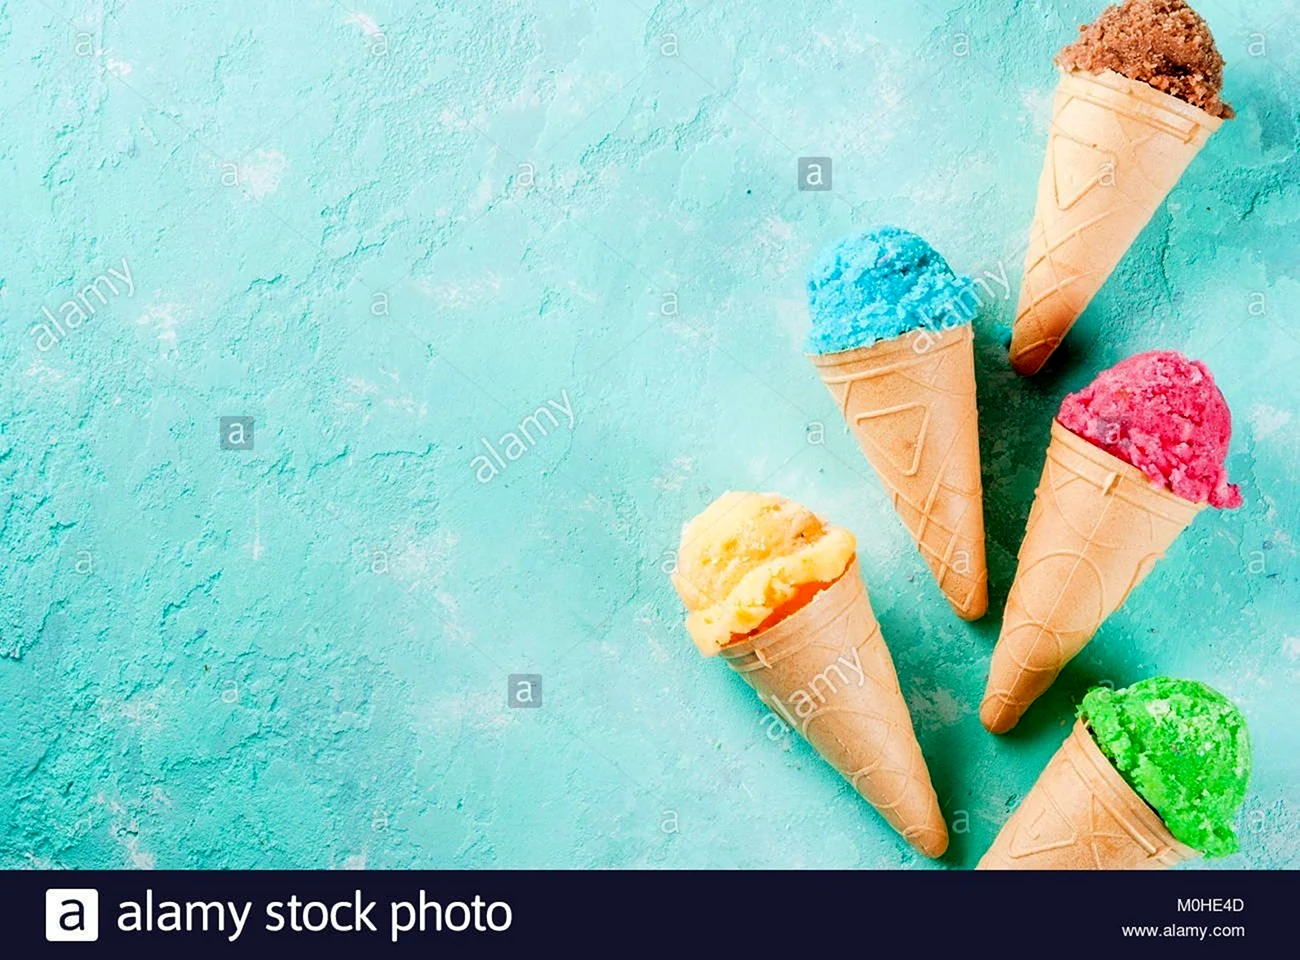 Лист с рамочкой в виде мороженого